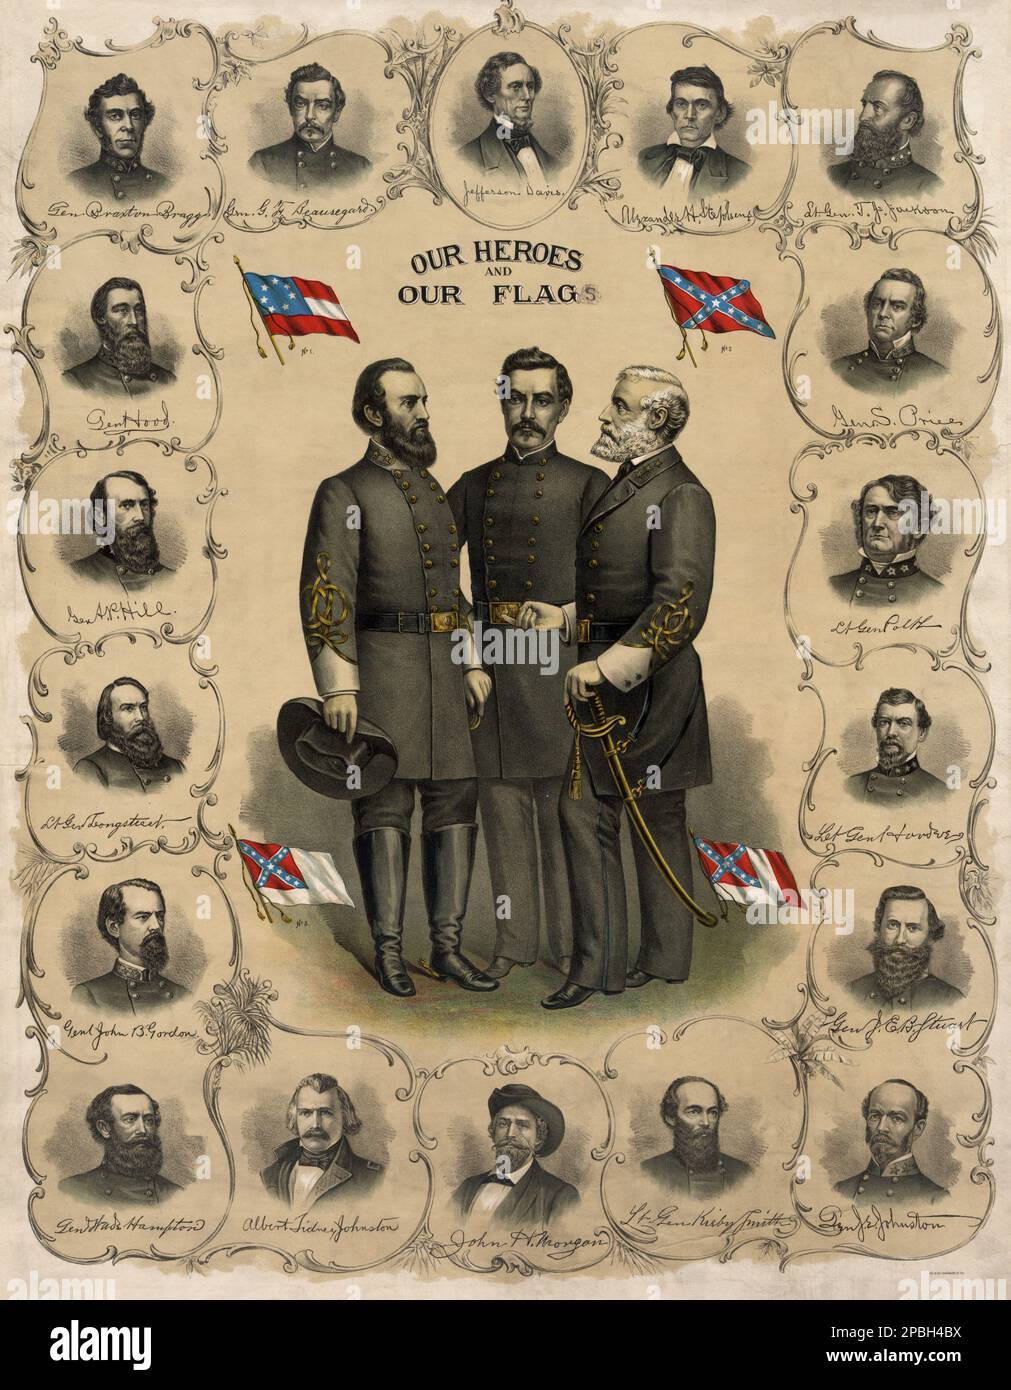 'Nuestros héroes y nuestra bandera'. Litografía 1896 por Southern Lithograph Co. Impresión que muestra retratos de cuerpo completo de Robert E. Lee, Stonewall Jackson y G.T. Beauregard con cuatro versiones de la bandera confederada rodeada de retratos de busto de Jefferson Davis y oficiales del ejército confederado. El General ROBERT E. LEE ( 1807 - 1870 ) del Ejército Confederado . Lee fue un oficial de carrera del Ejército de los Estados Unidos, un ingeniero, y uno de los generales más celebrados en la historia de los Estados Unidos.- GUERRA CIVIL de SECESIÓN - GUERRA CIVILE DI Secesione AMERICANA - cappello - sombrero - uomo anziano vecchio - hombre mayor - púas Foto de stock